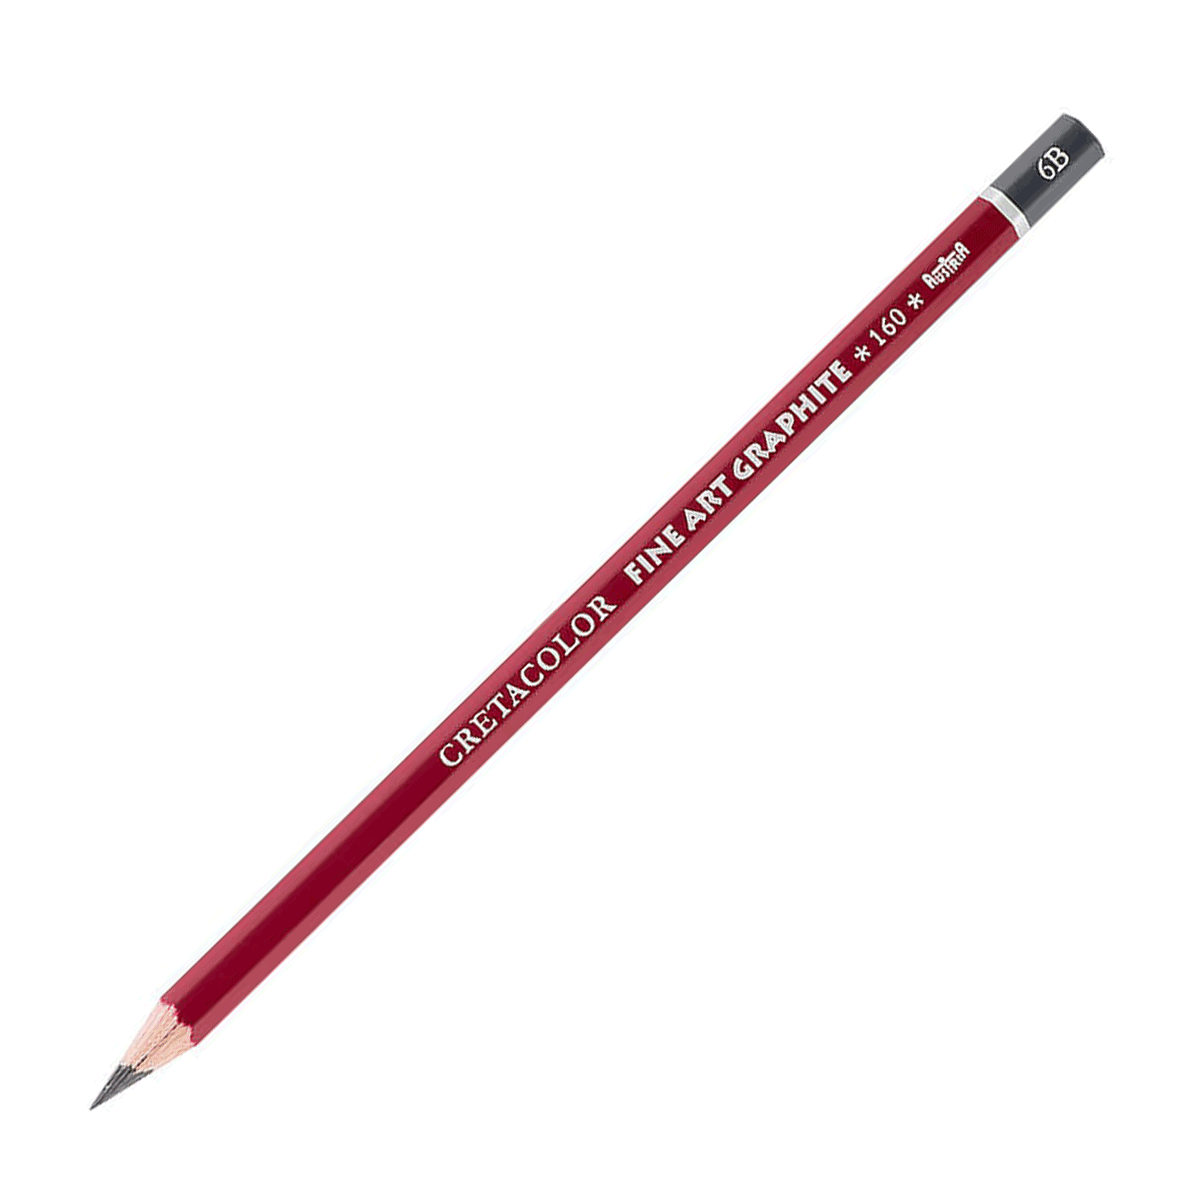 Cretacolor Fine Art Red Graphite Pencil - 6B